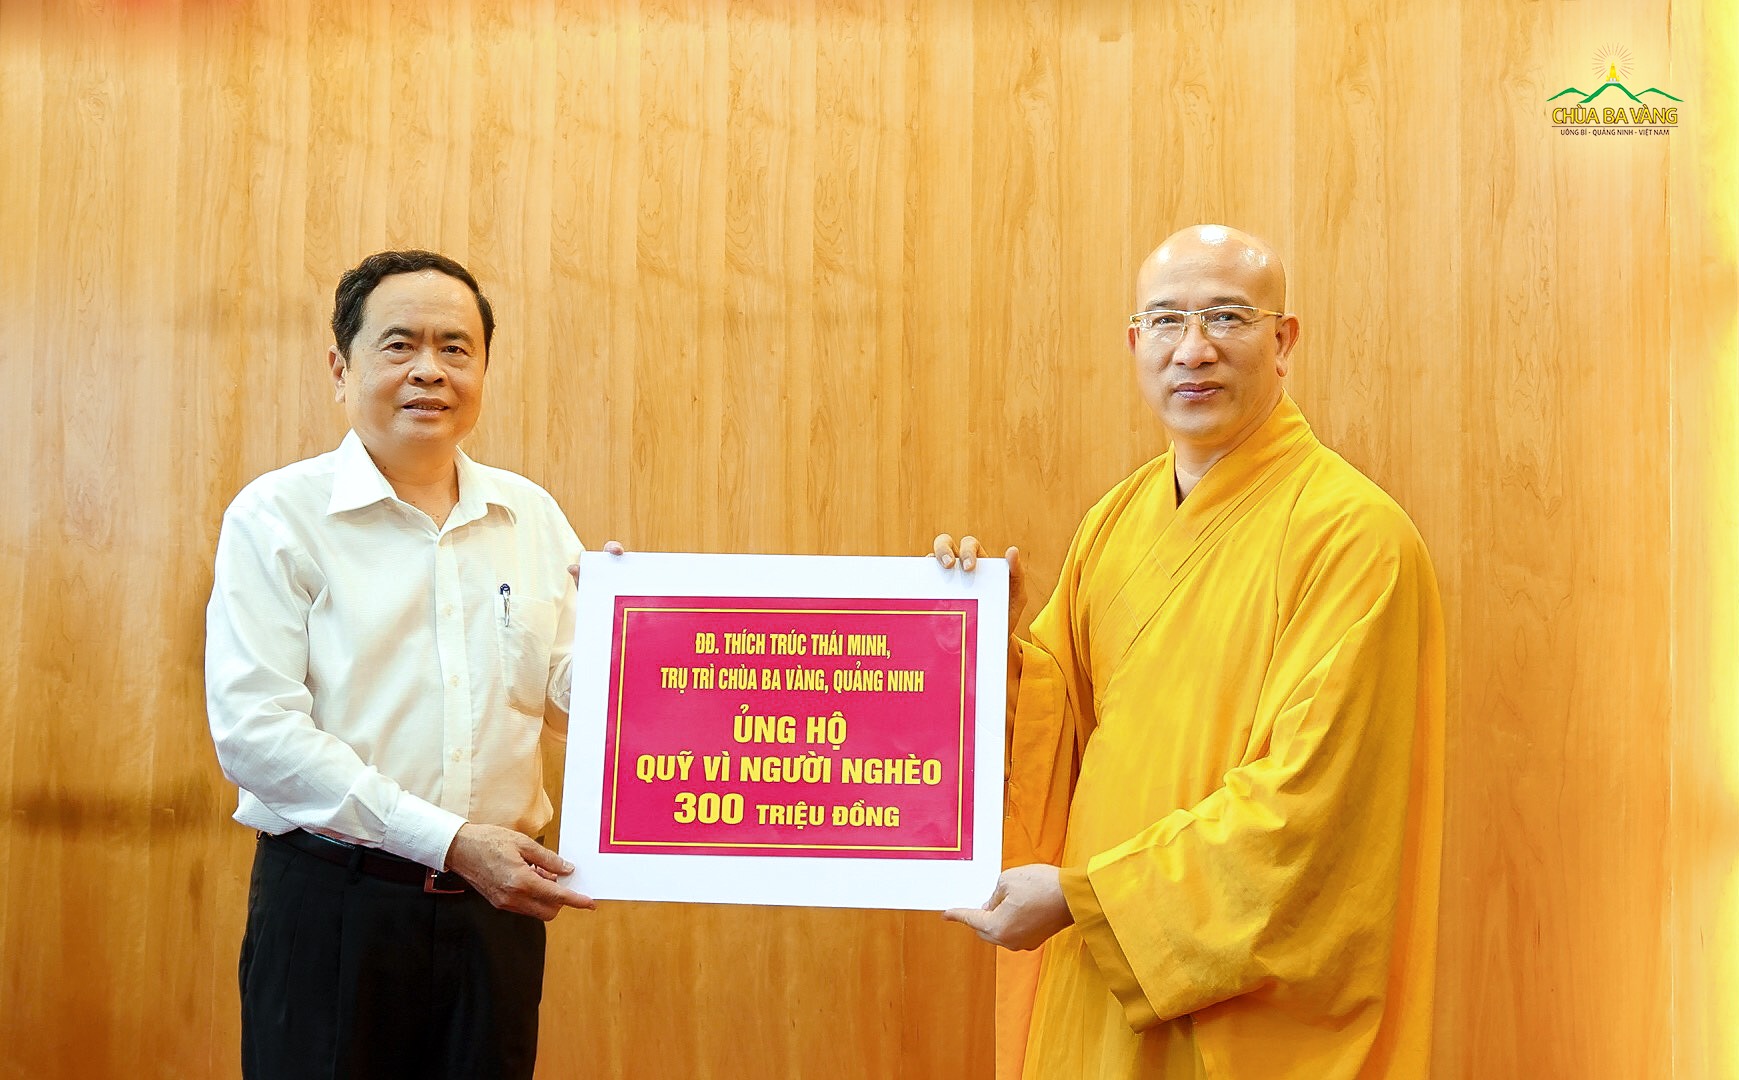 Sư Phụ Thích Trúc Thái Minh thay mặt Tăng Ni, Phật tử chùa Ba Vàng ủng hộ Quỹ “Vì người nghèo' và đồng bào bị thiên tai